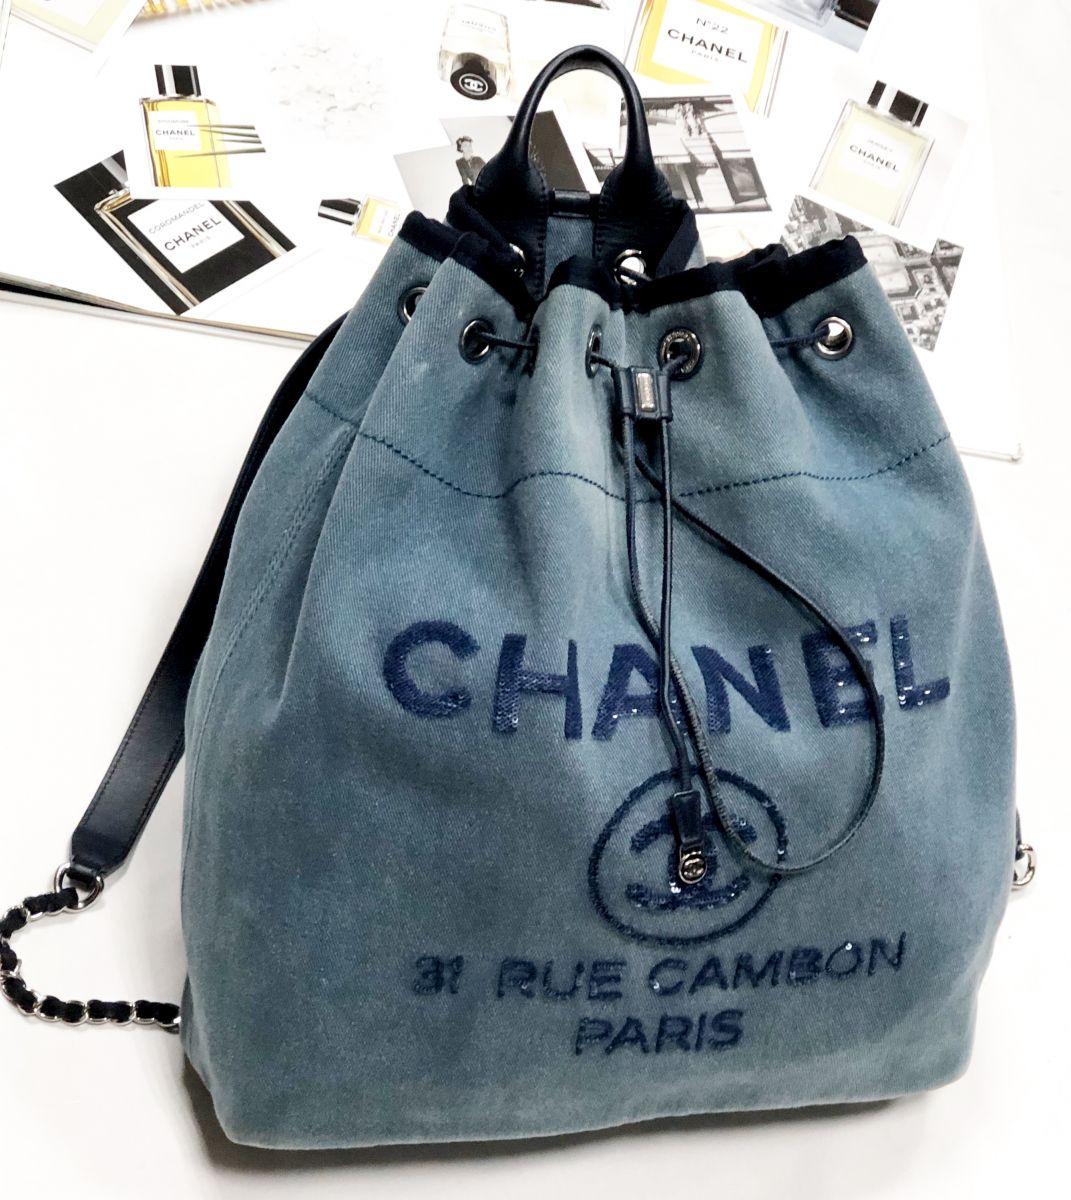 Рюкзак/пайетки/ Chanel размер 33/35 цена 92 310 руб/ карточка/ 